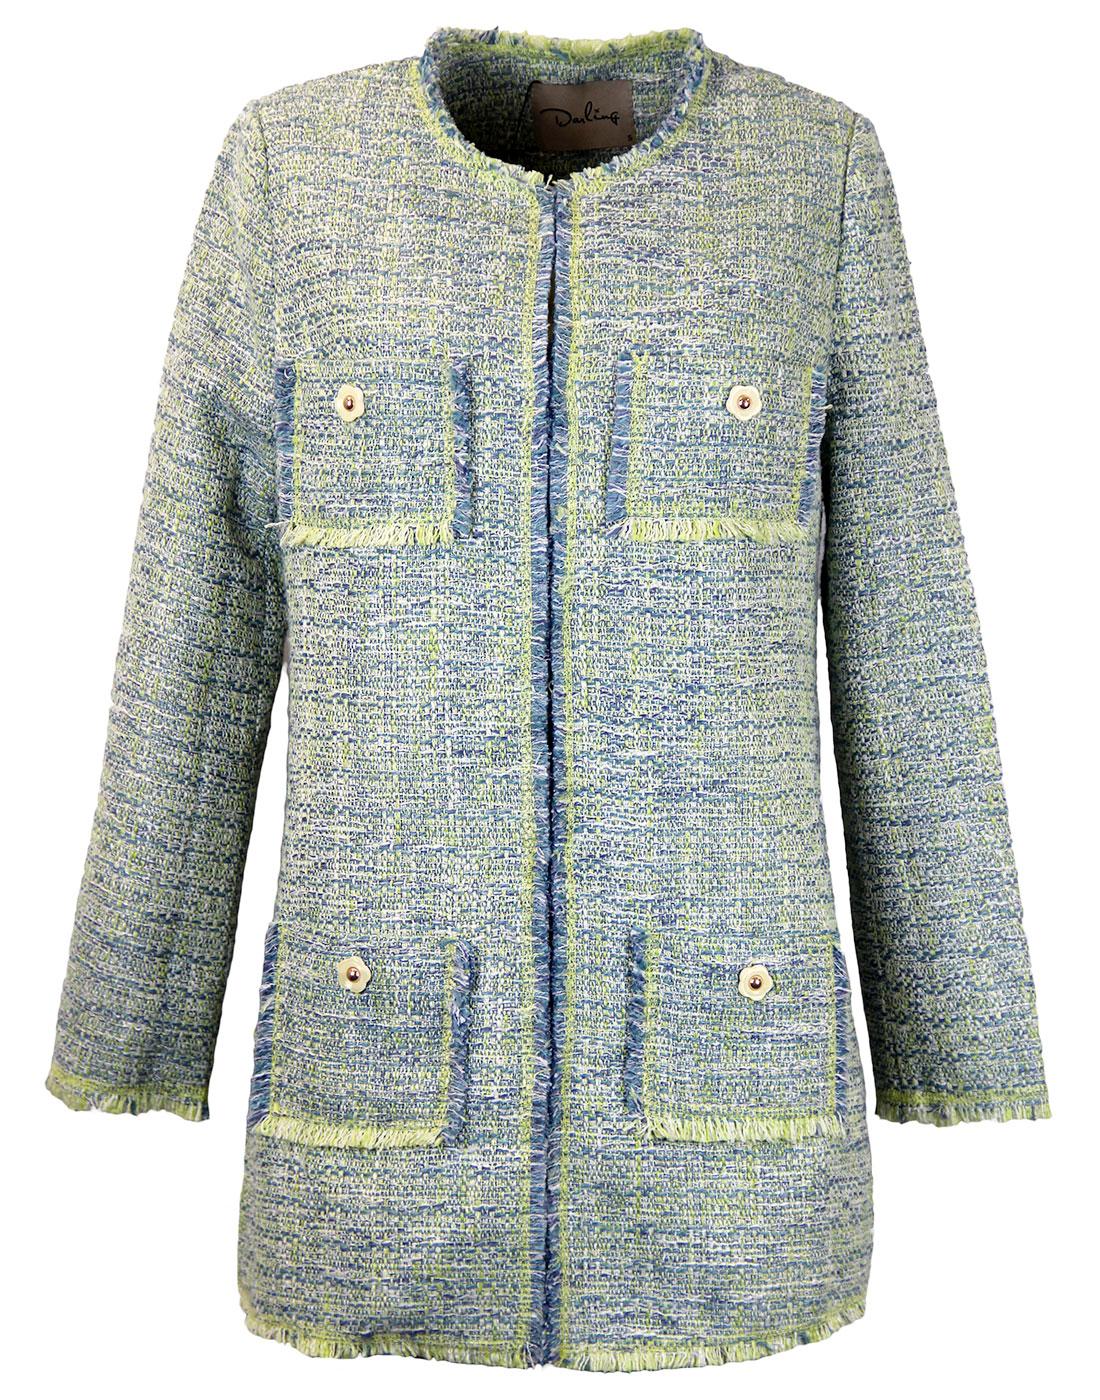 Esmee DARLING 1960s Mod Tweed Look Weave Coat